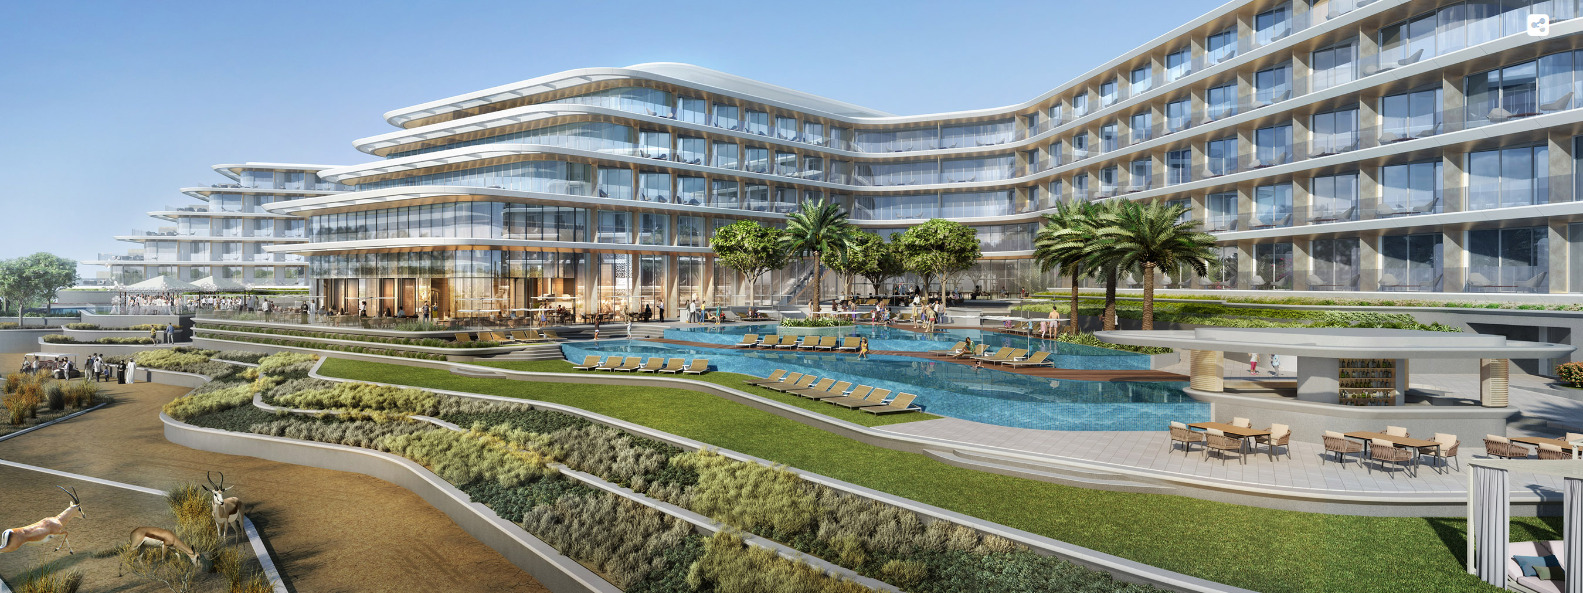 На территории крупнейшего в Дубае курортно-развлекательного комплекса открылся отель JA Lake View 